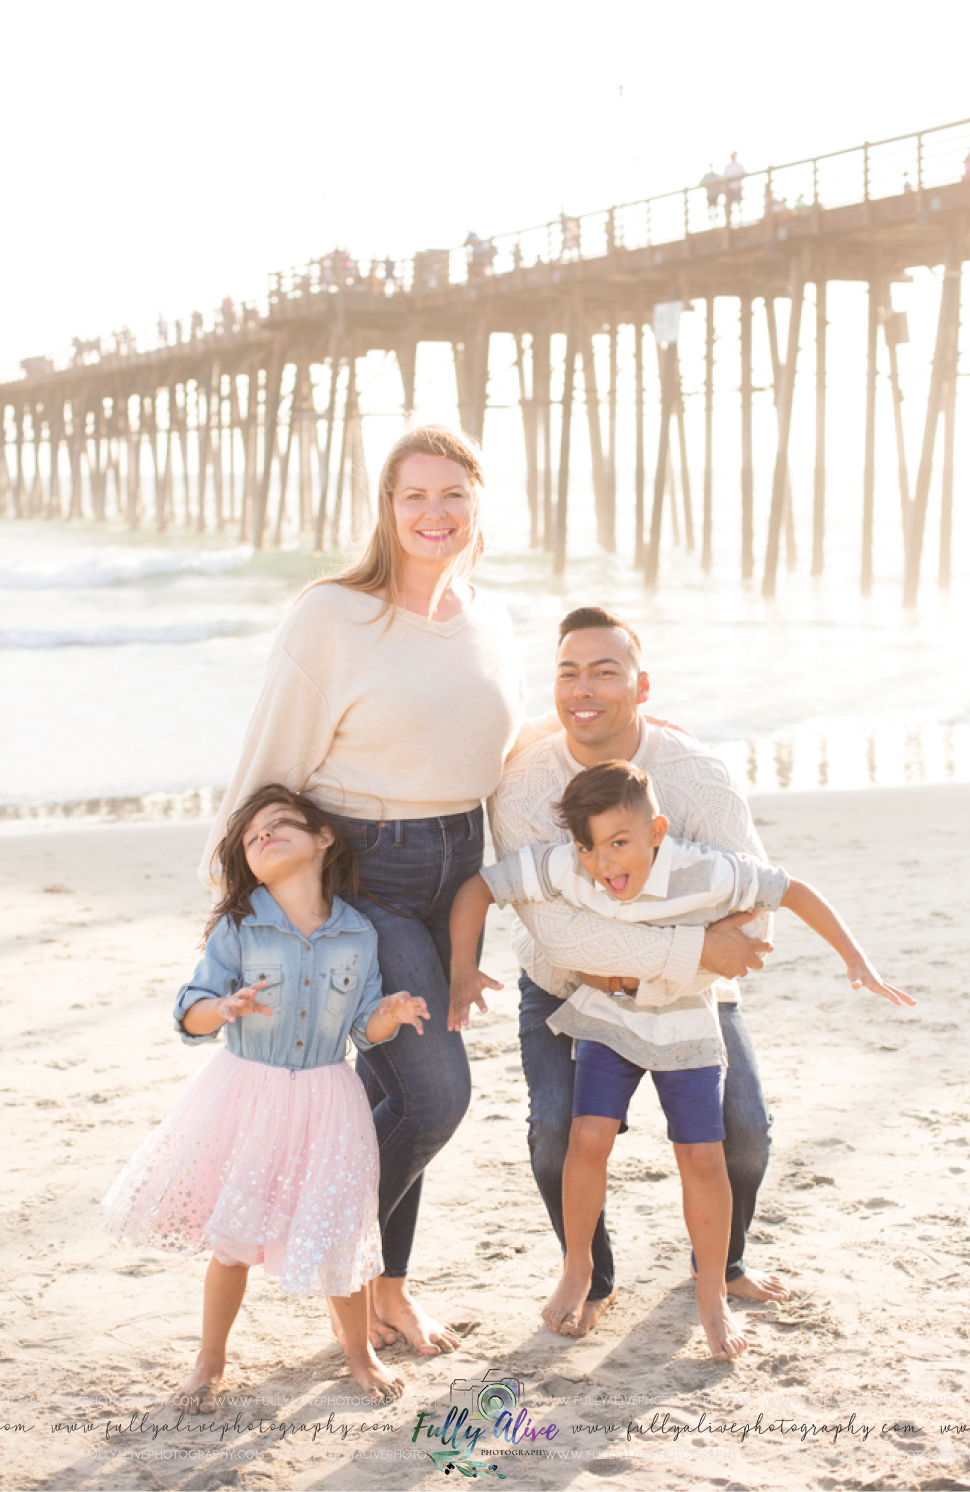 Learn To Let Go A Beach Lifestyle Family Photographer's Advice